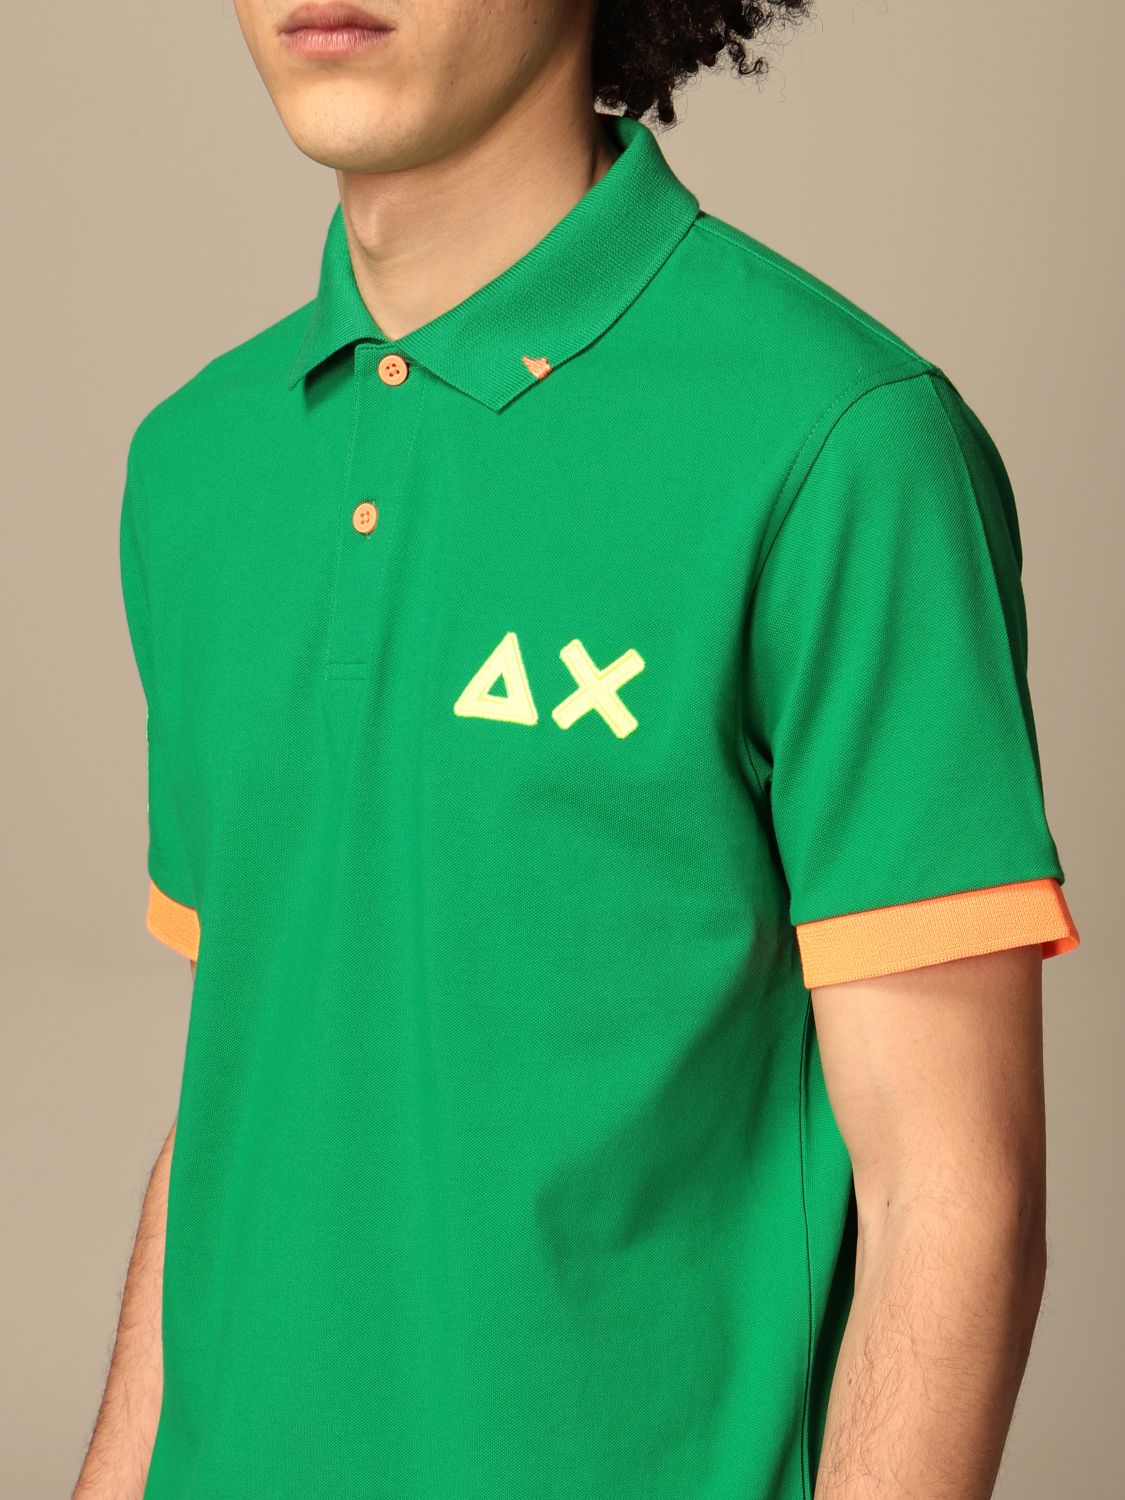 Polo shirt Sun 68: Sun 68 cotton polo shirt with logo green 3